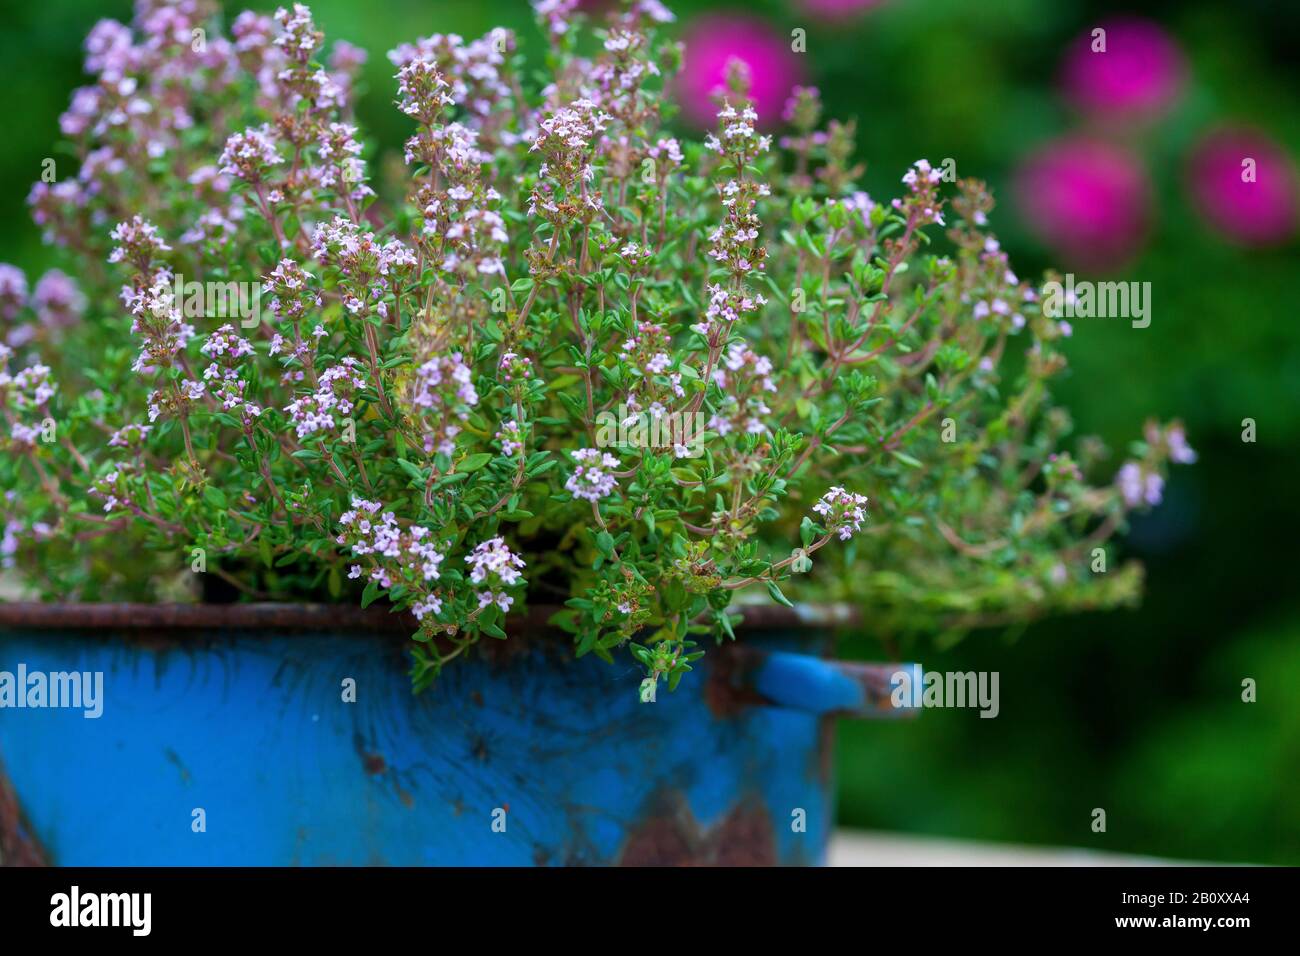 Thym de jardin, thym anglais, thym commun (Thymus vulgaris), floraison dans un pot, Allemagne Banque D'Images